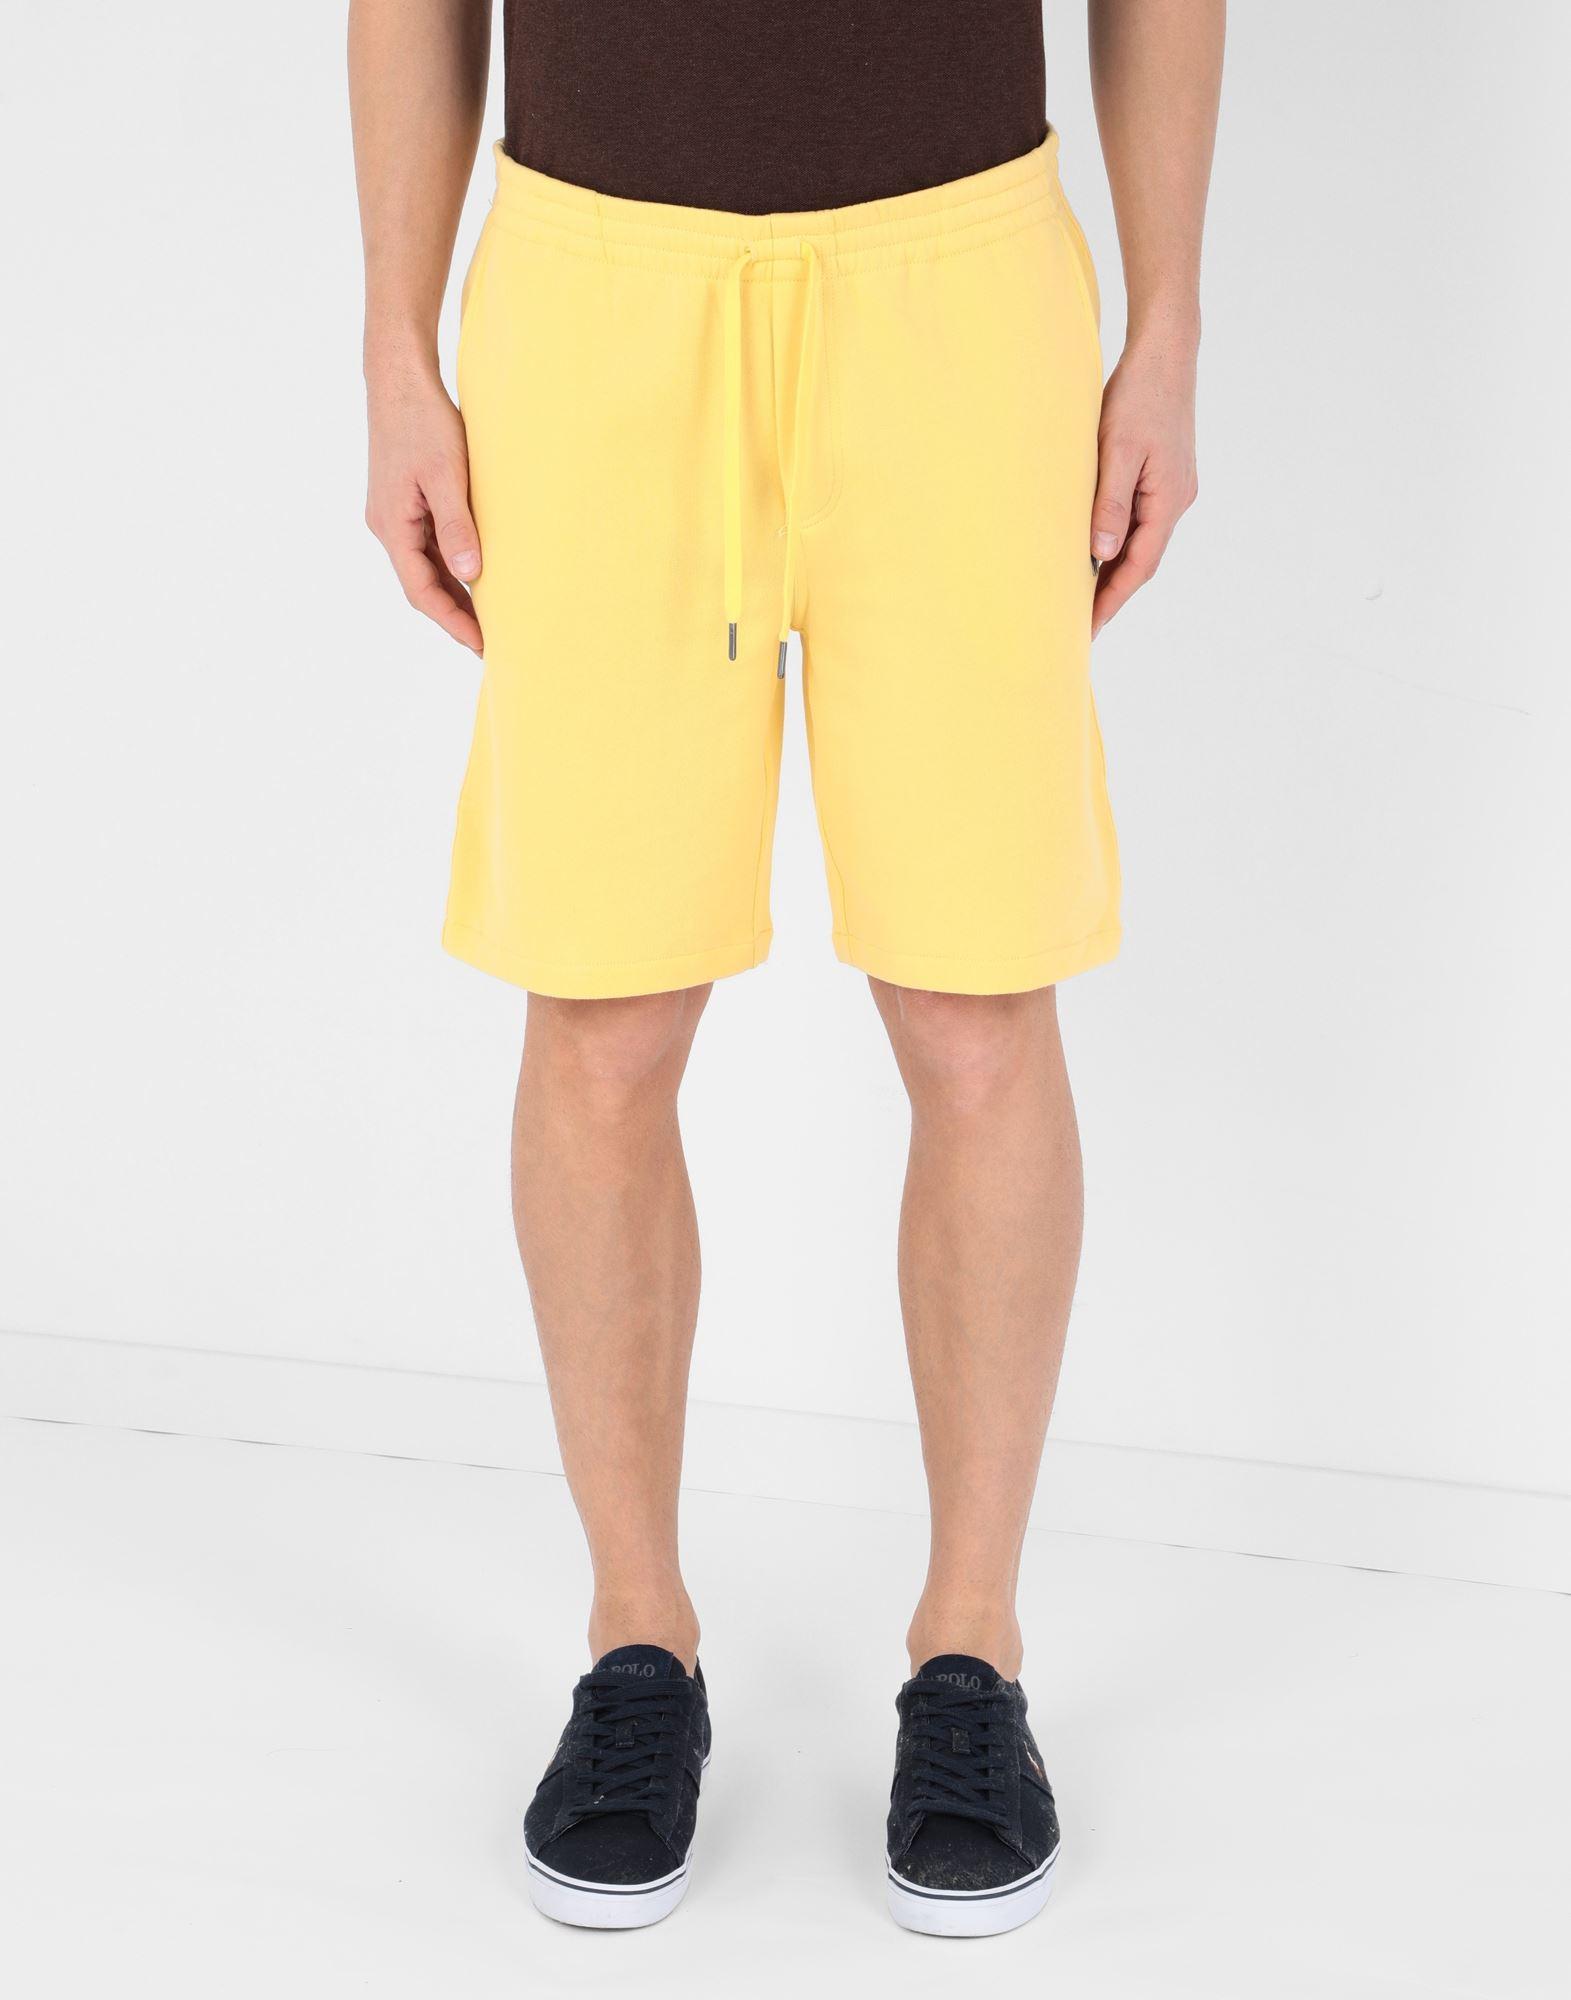 Polo Ralph Lauren Fleece Bermuda Shorts in Yellow for Men - Lyst